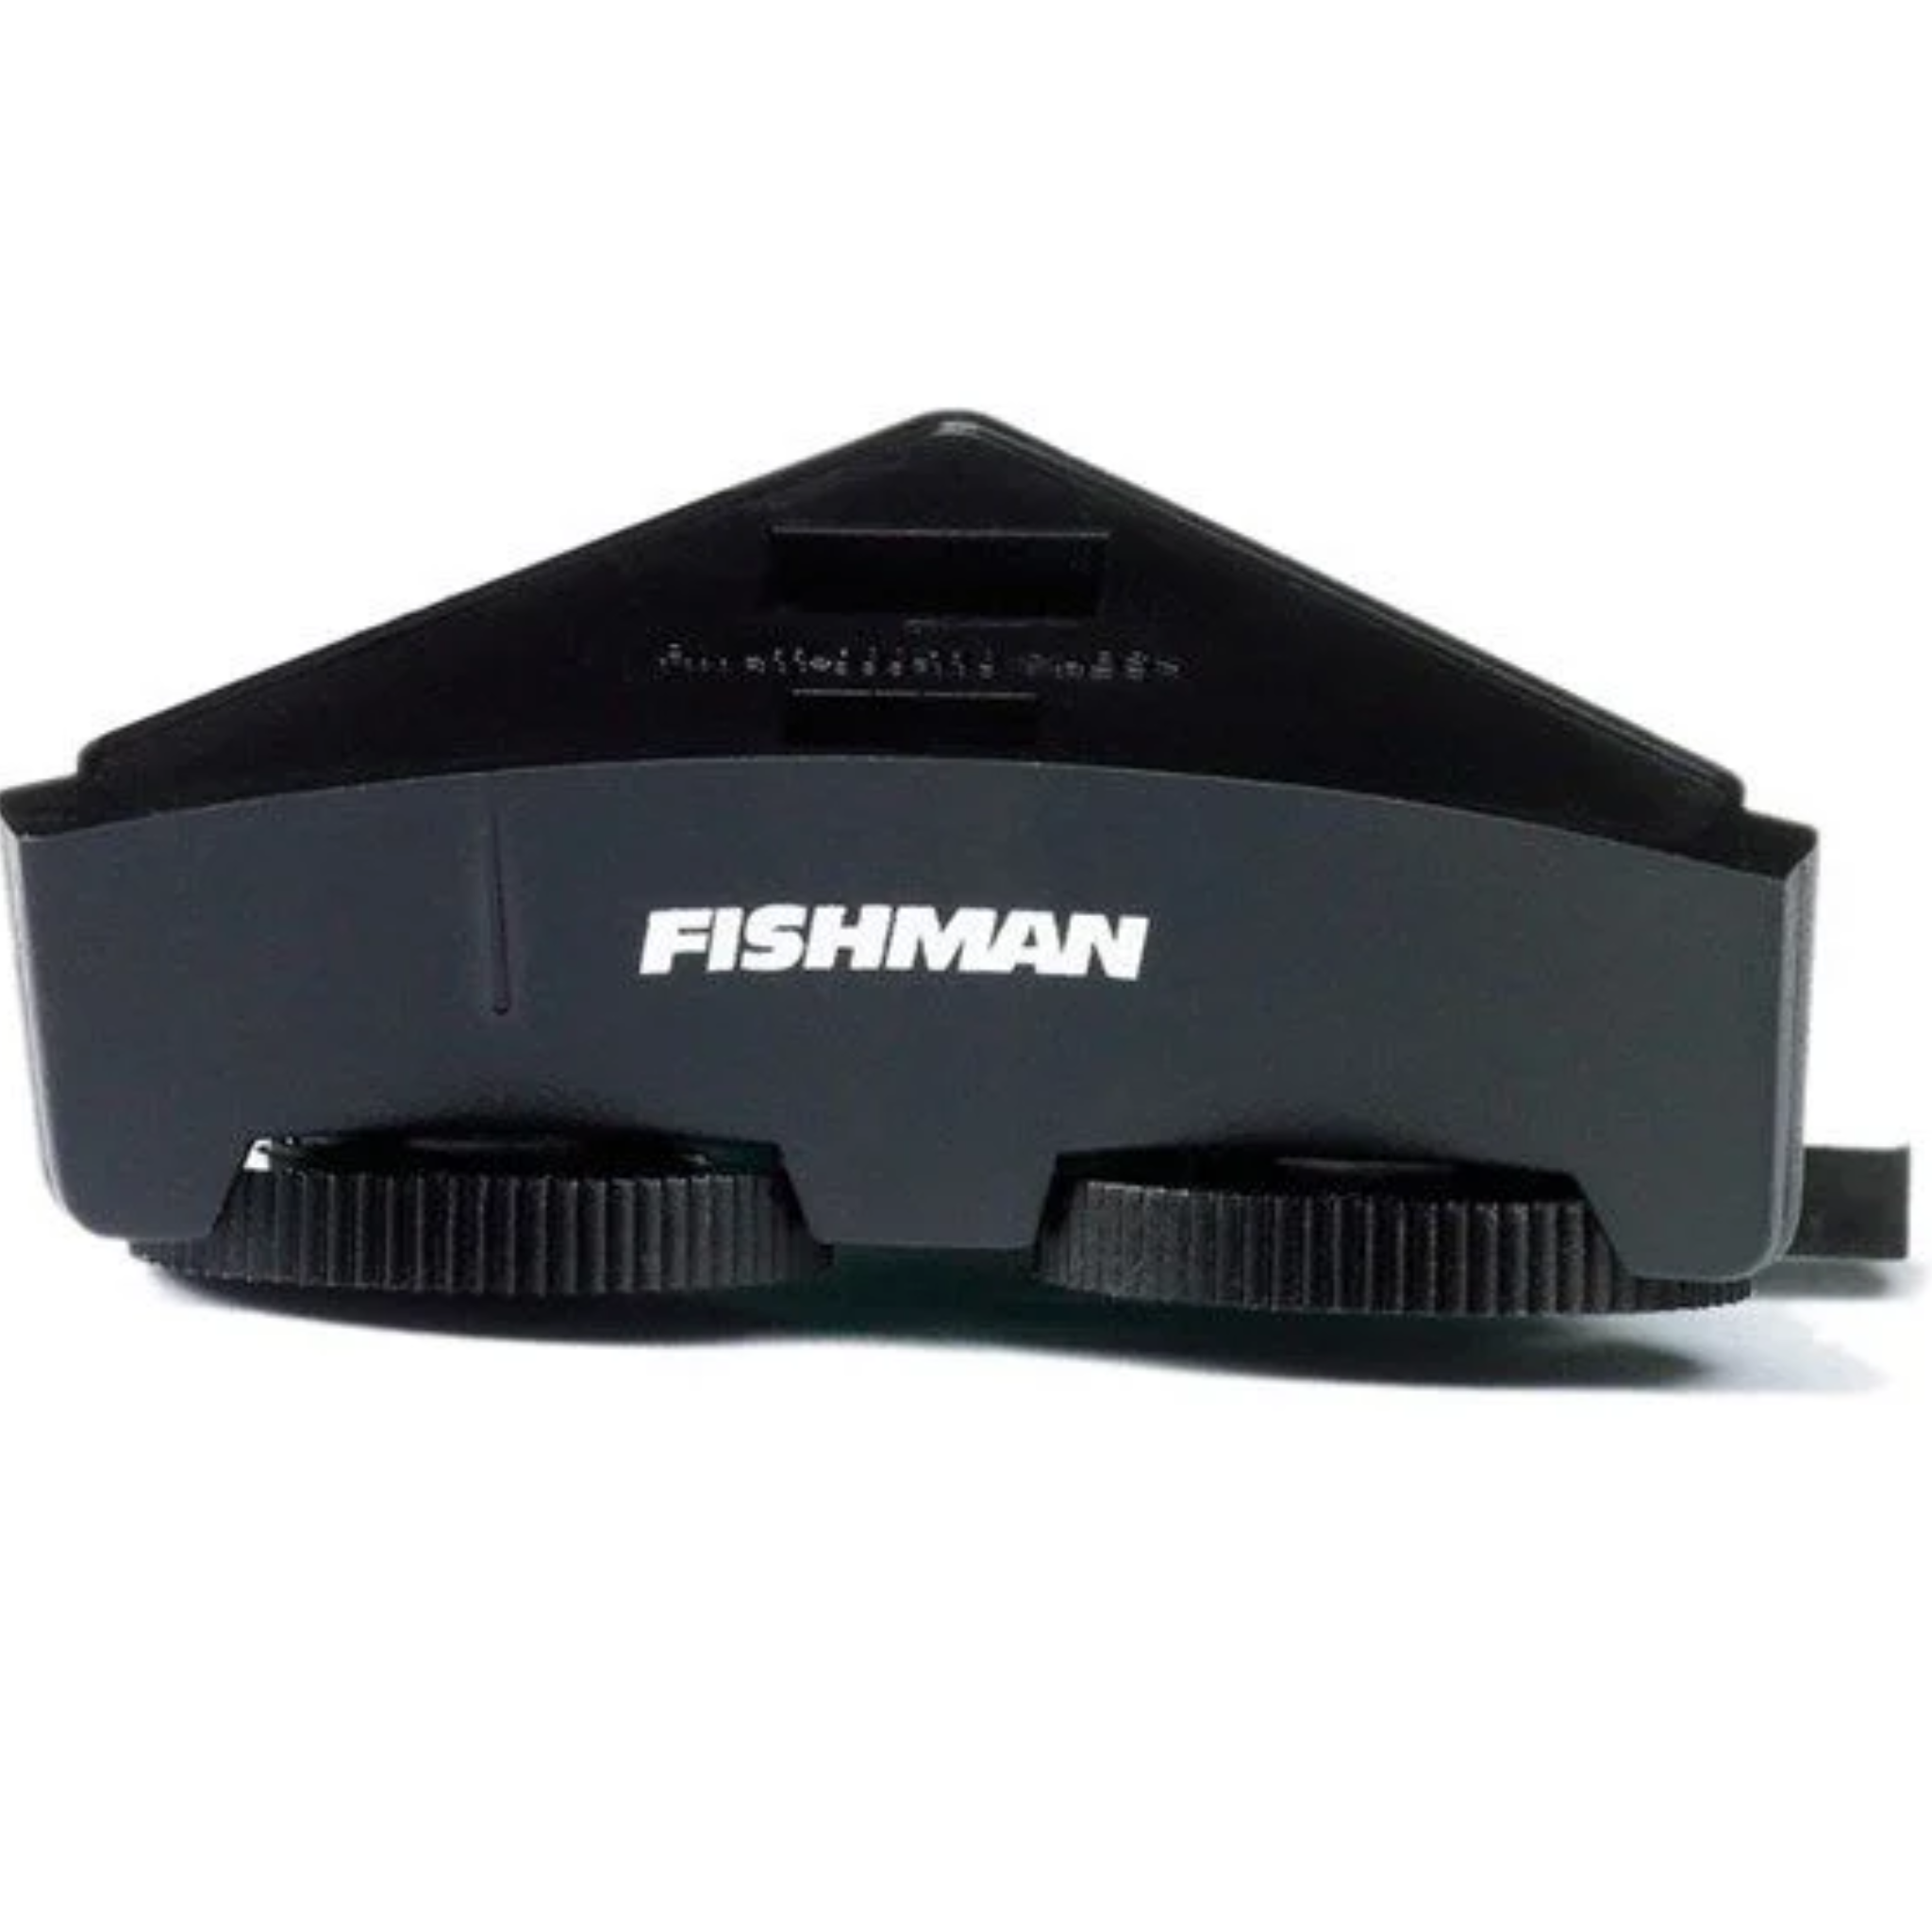 Fishman® Sonitone Preamp